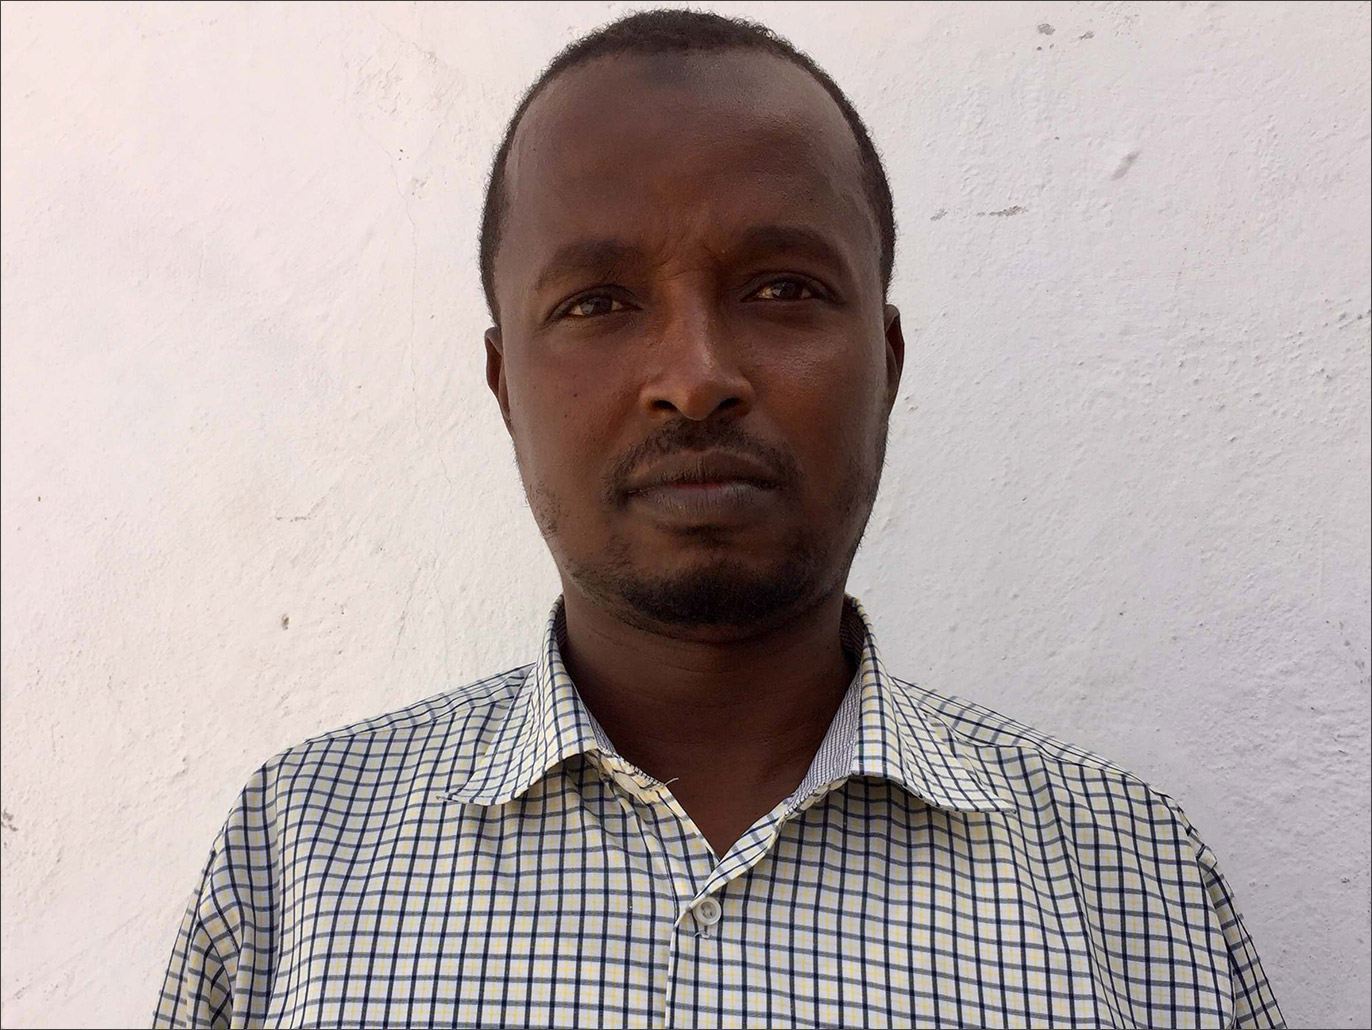 ‪سوداني: روبو خارج حسابات الفوز‬ (الجزيرة)